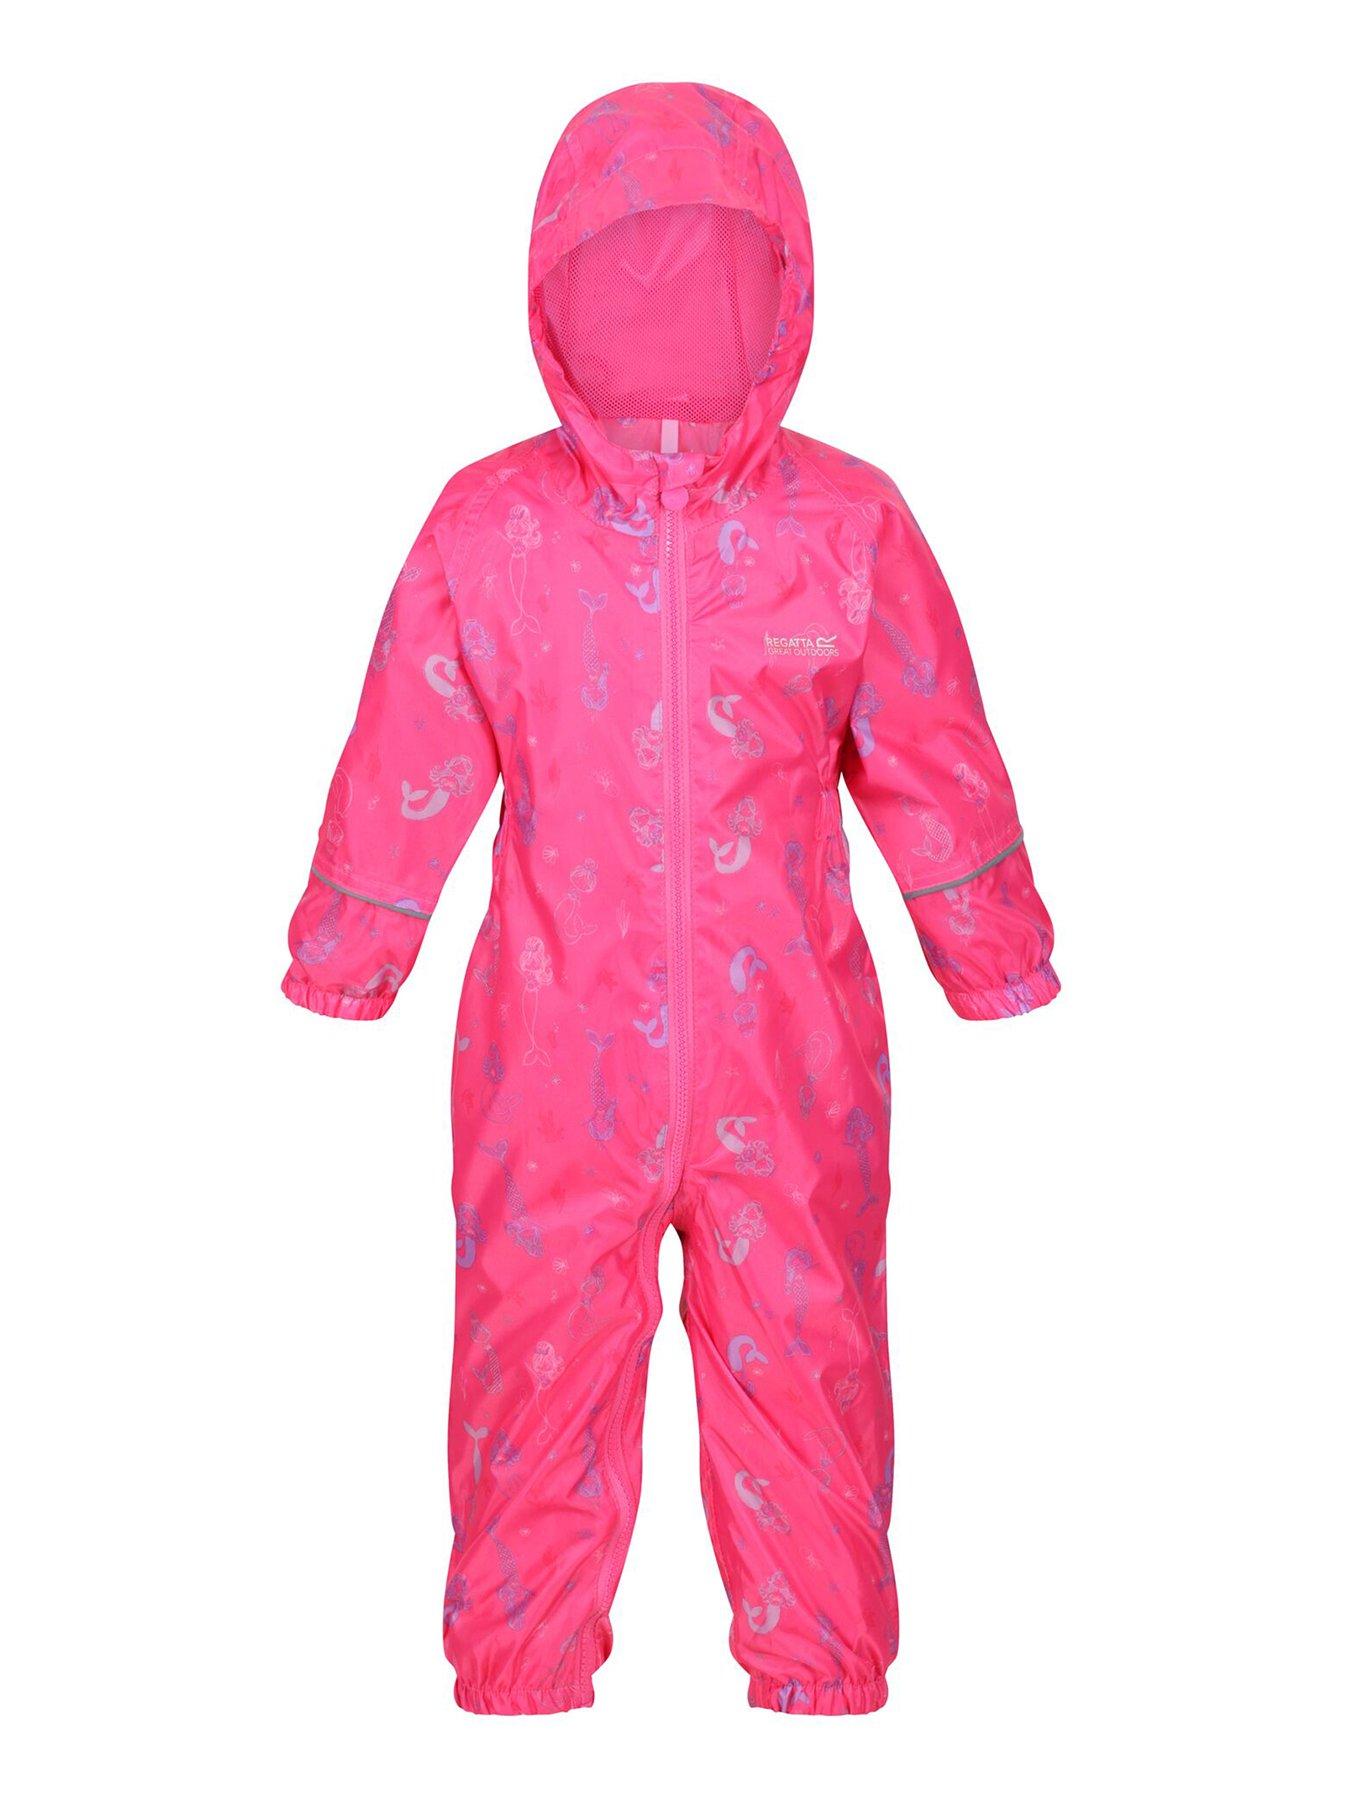 Kids Kids Pobble Waterproof Suit - Pink Print